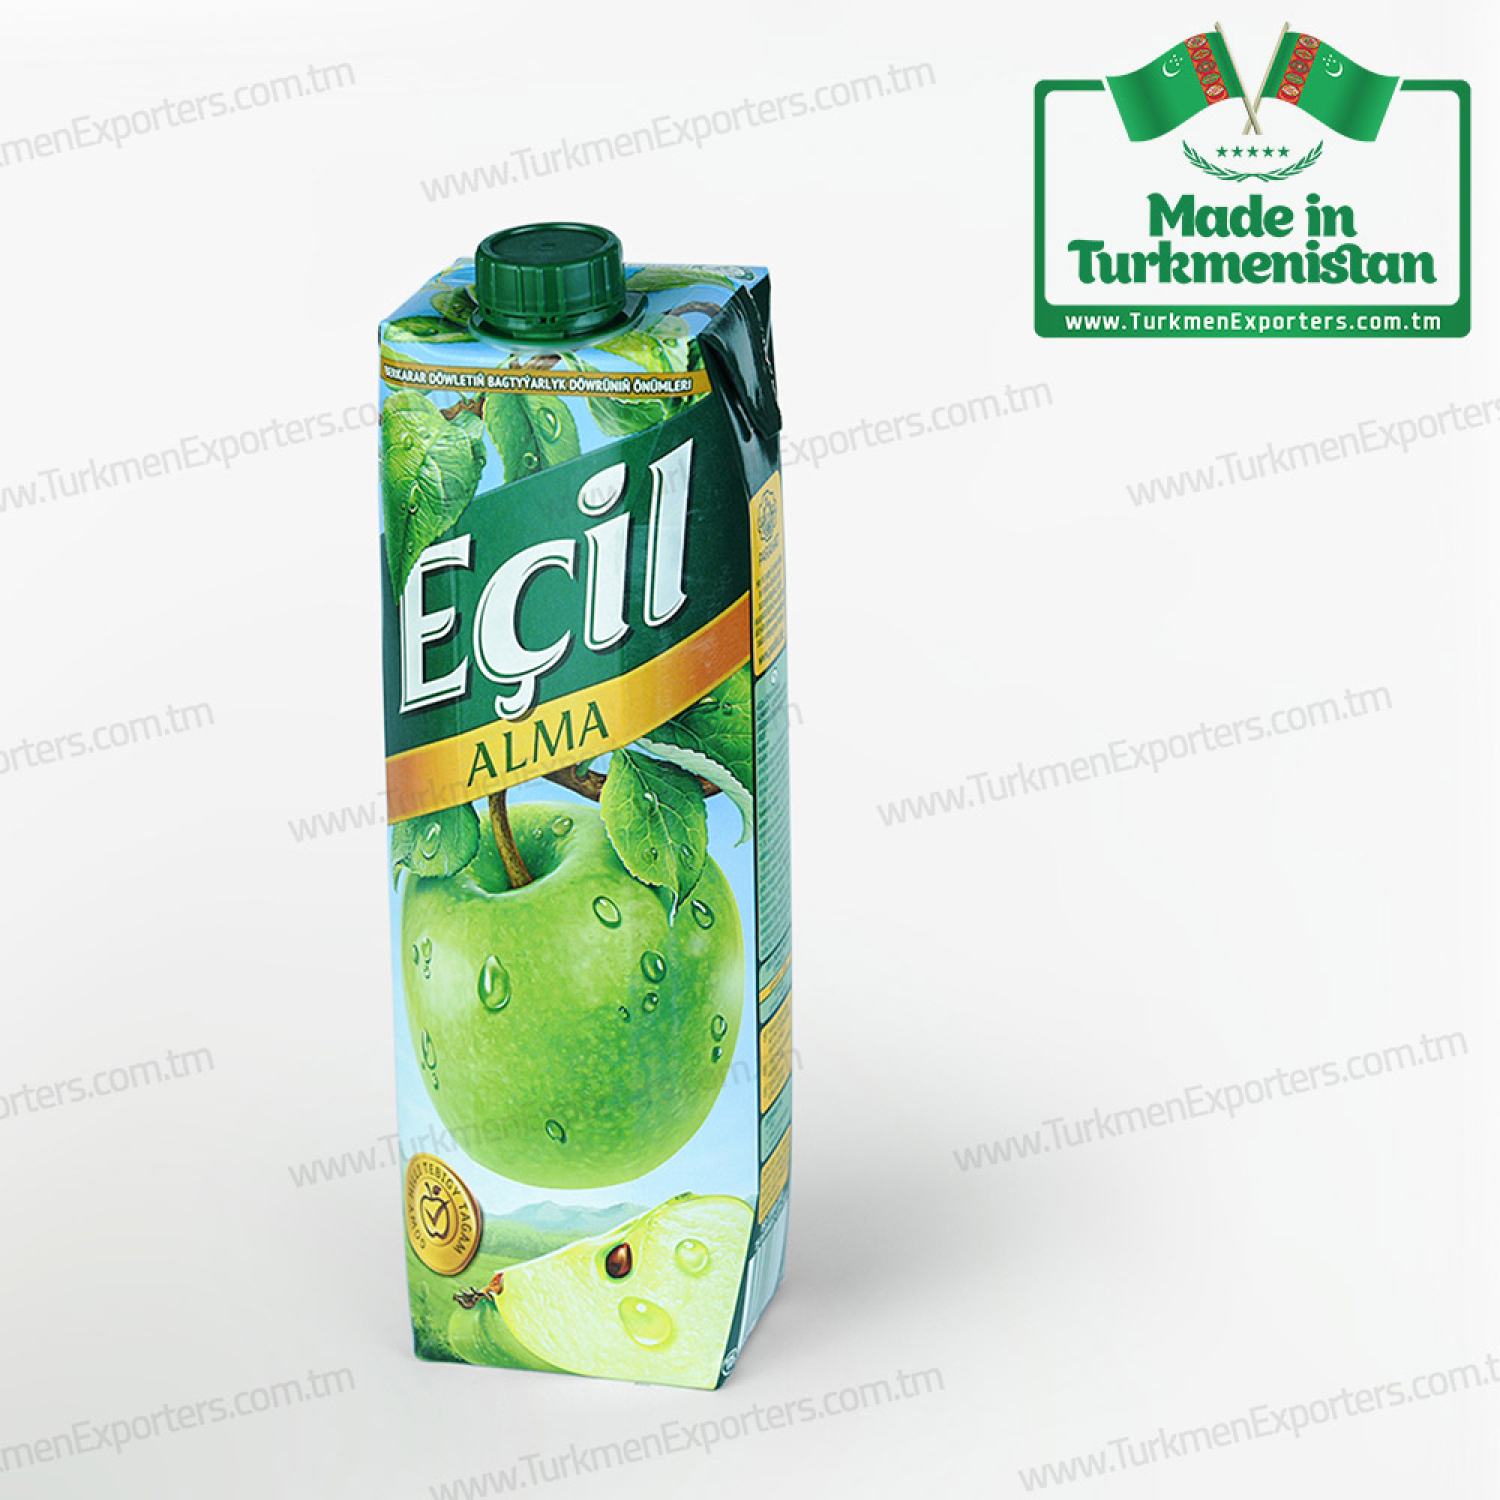 Apple fruit juice wholesale from Turkmenistan for export | Parahat individual enterprise